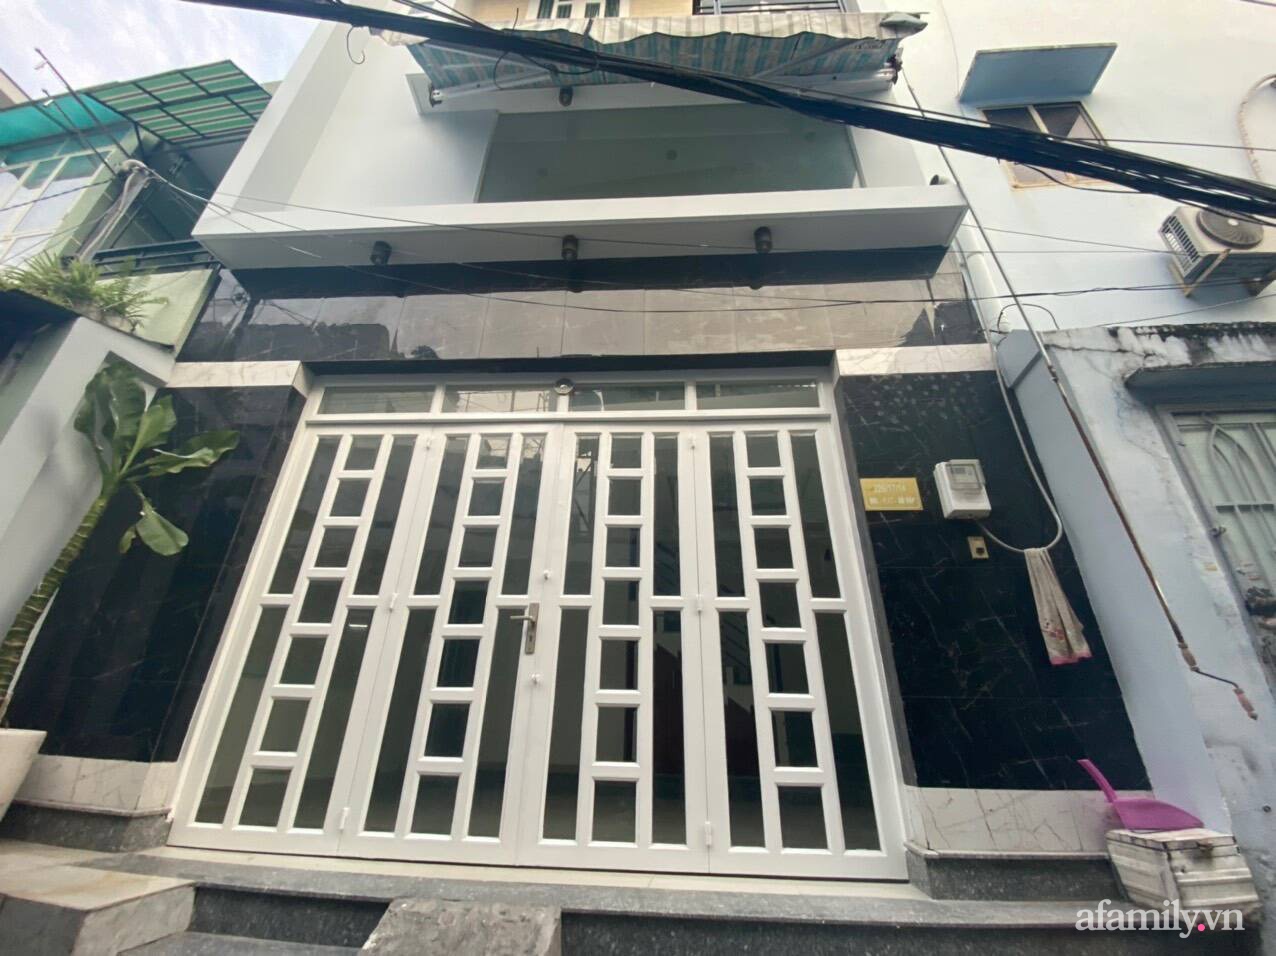 Nhà phố 26m² rộng thoáng và tiện nghi nhờ loại bỏ vách ngăn, thêm nội thất ấn tượng sau cải tạo ở Sài Gòn - Ảnh 1.